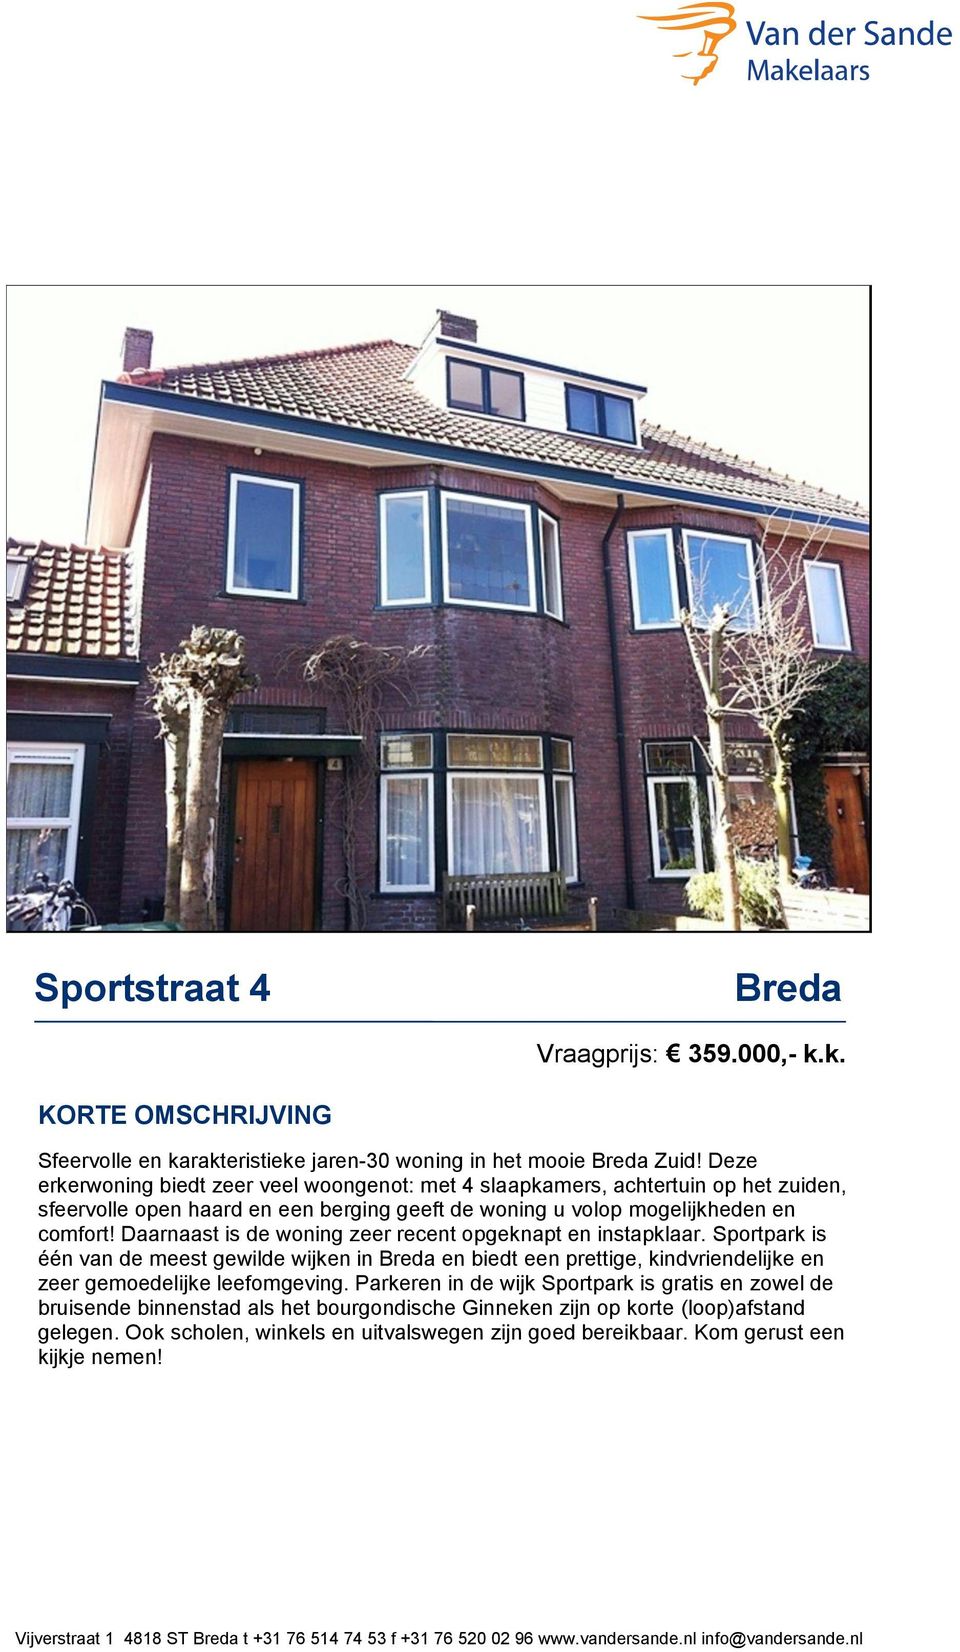 Daarnaast is de woning zeer recent opgeknapt en instapklaar. Sportpark is één van de meest gewilde wijken in Breda en biedt een prettige, kindvriendelijke en zeer gemoedelijke leefomgeving.